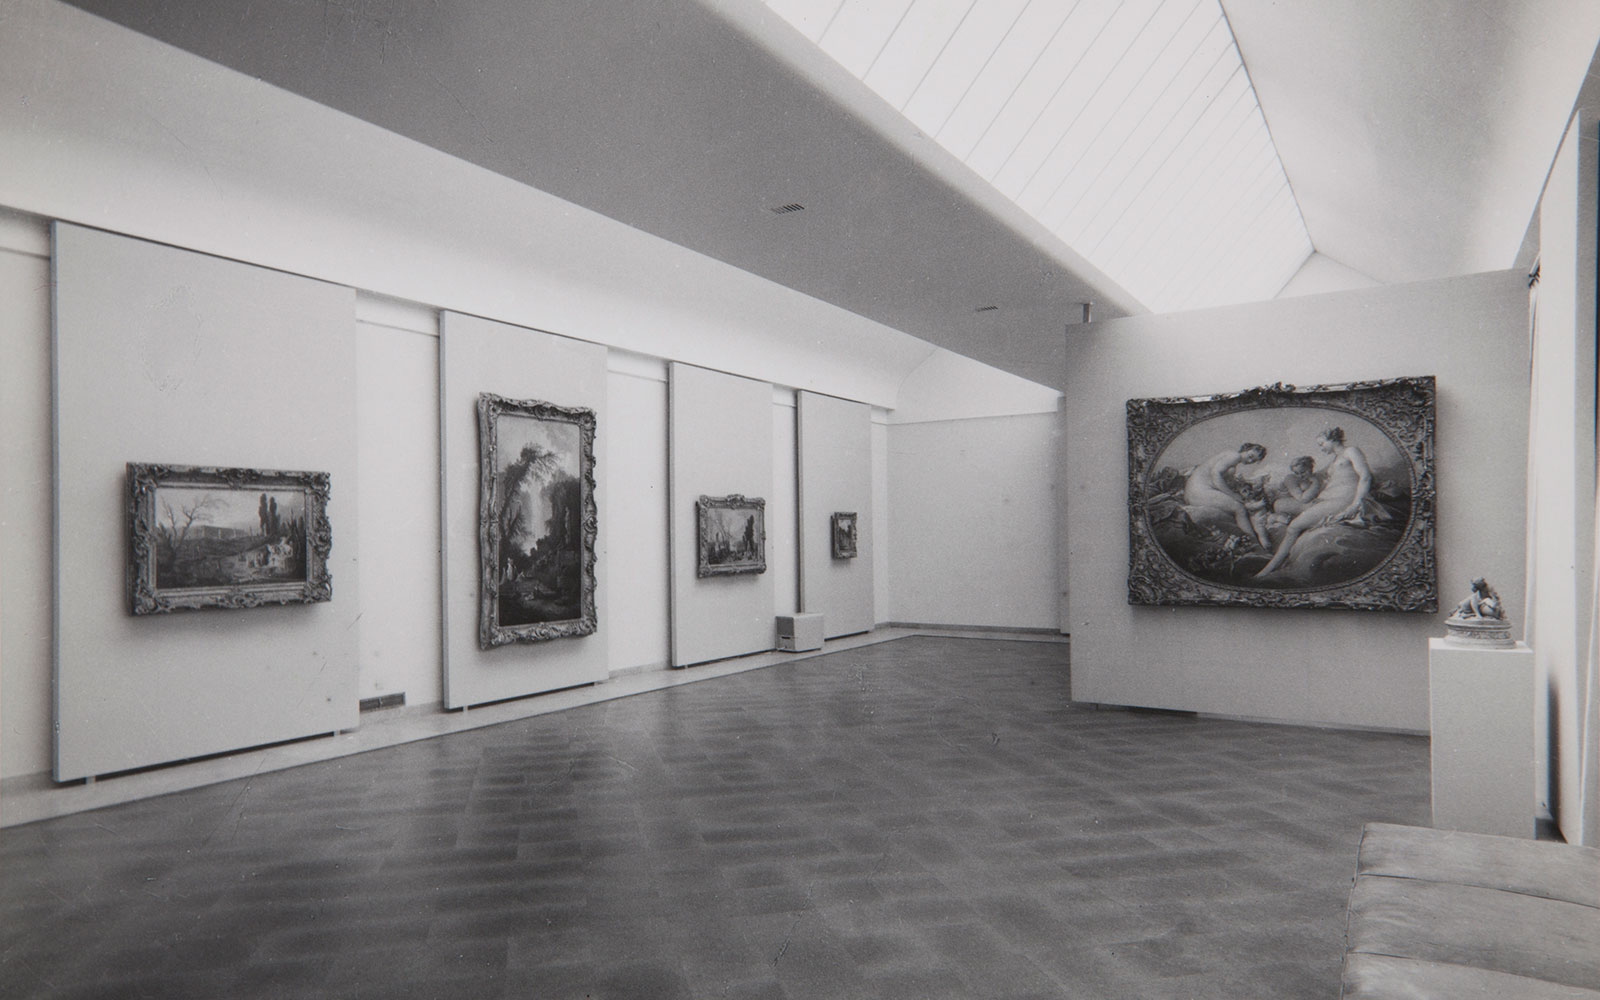 Aspeto da exposição «Artes Plásticas Francesas de Watteau a Renoir». Museu Nacional de Soares dos Reis, Porto, 1964. Arquivos Gulbenkian | ID: 140957